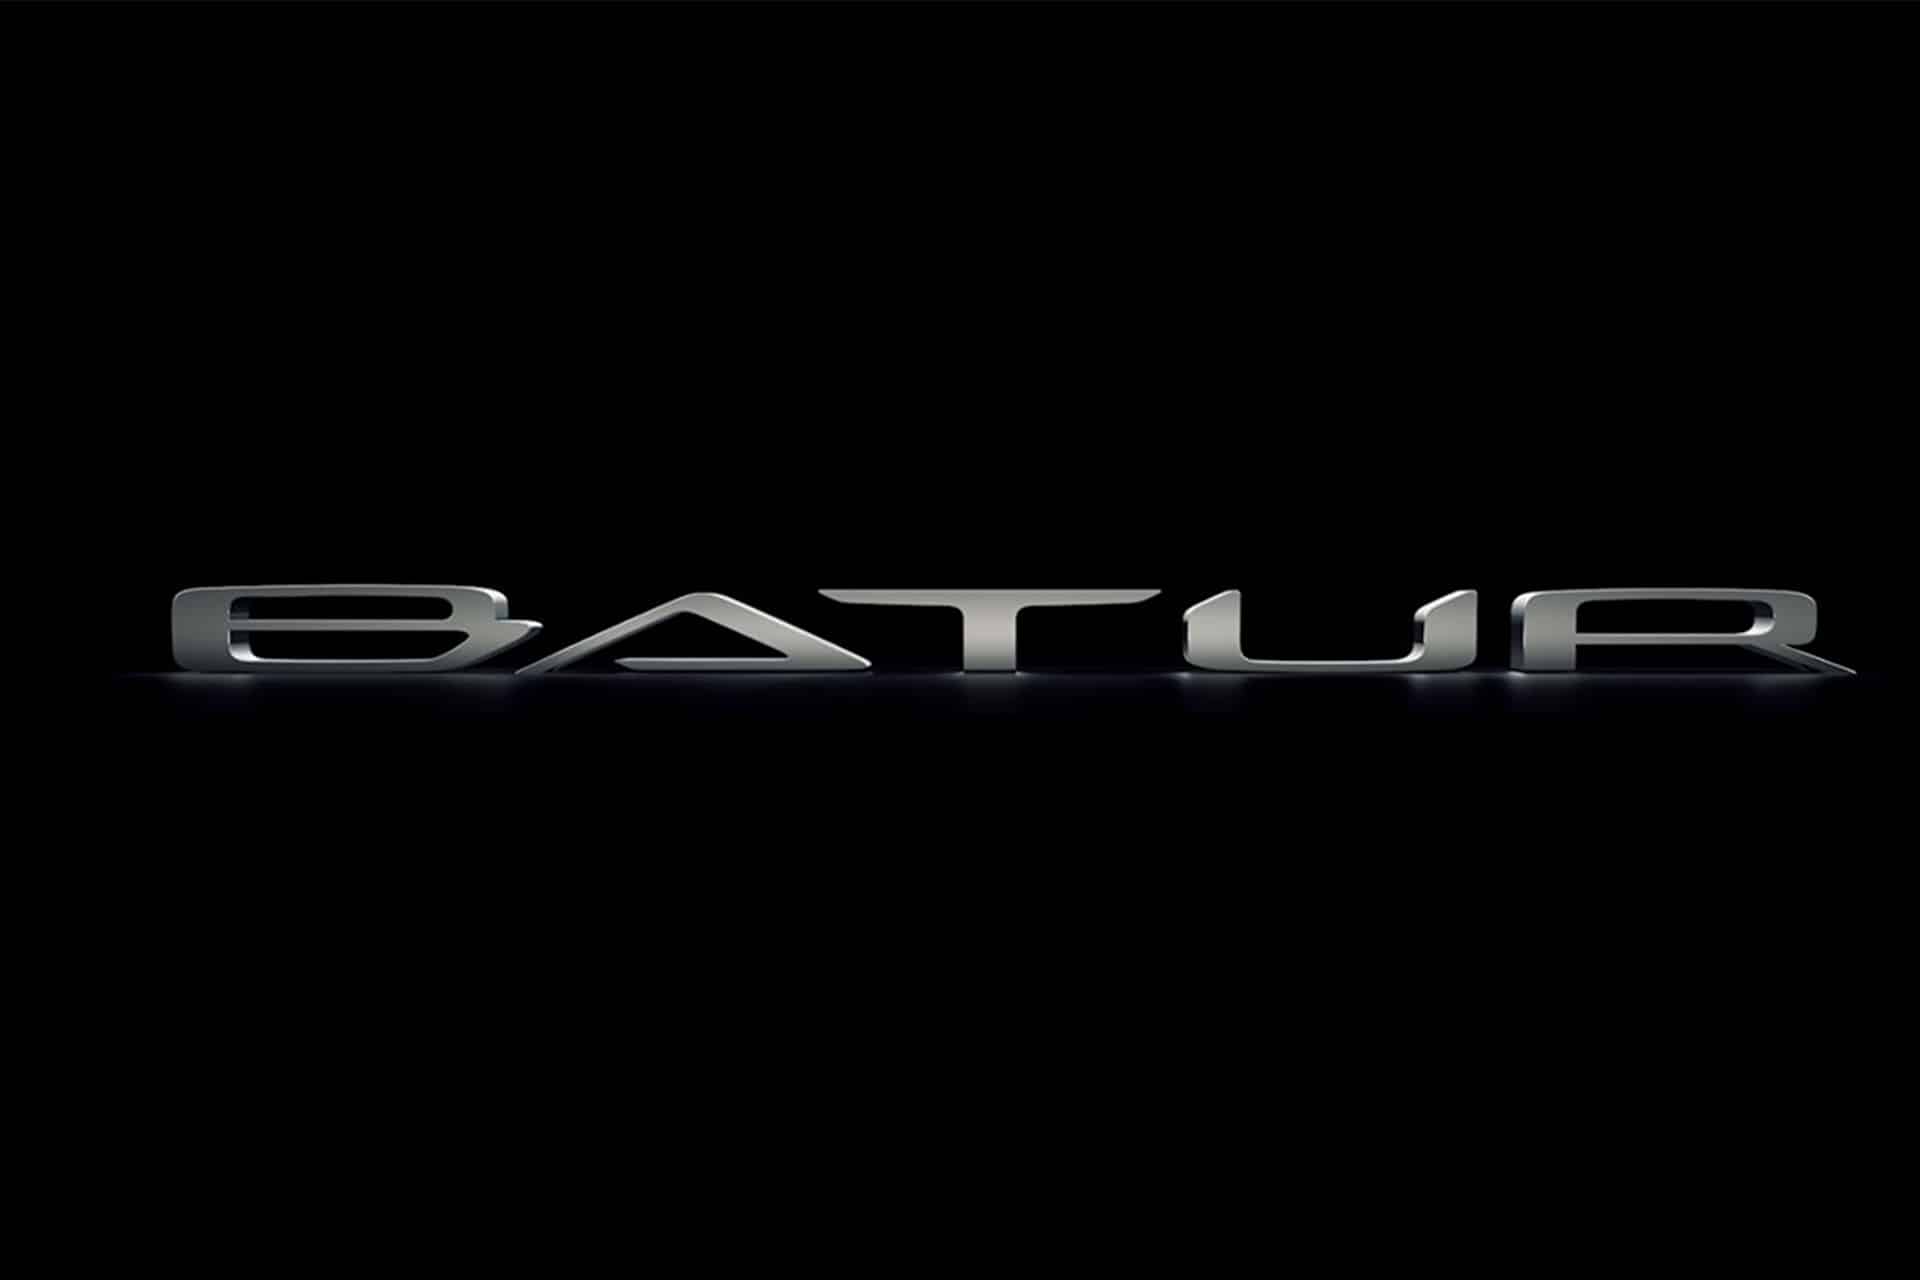 Das Foto zeigt den Namen des neuen Bentley Mulliner Batur